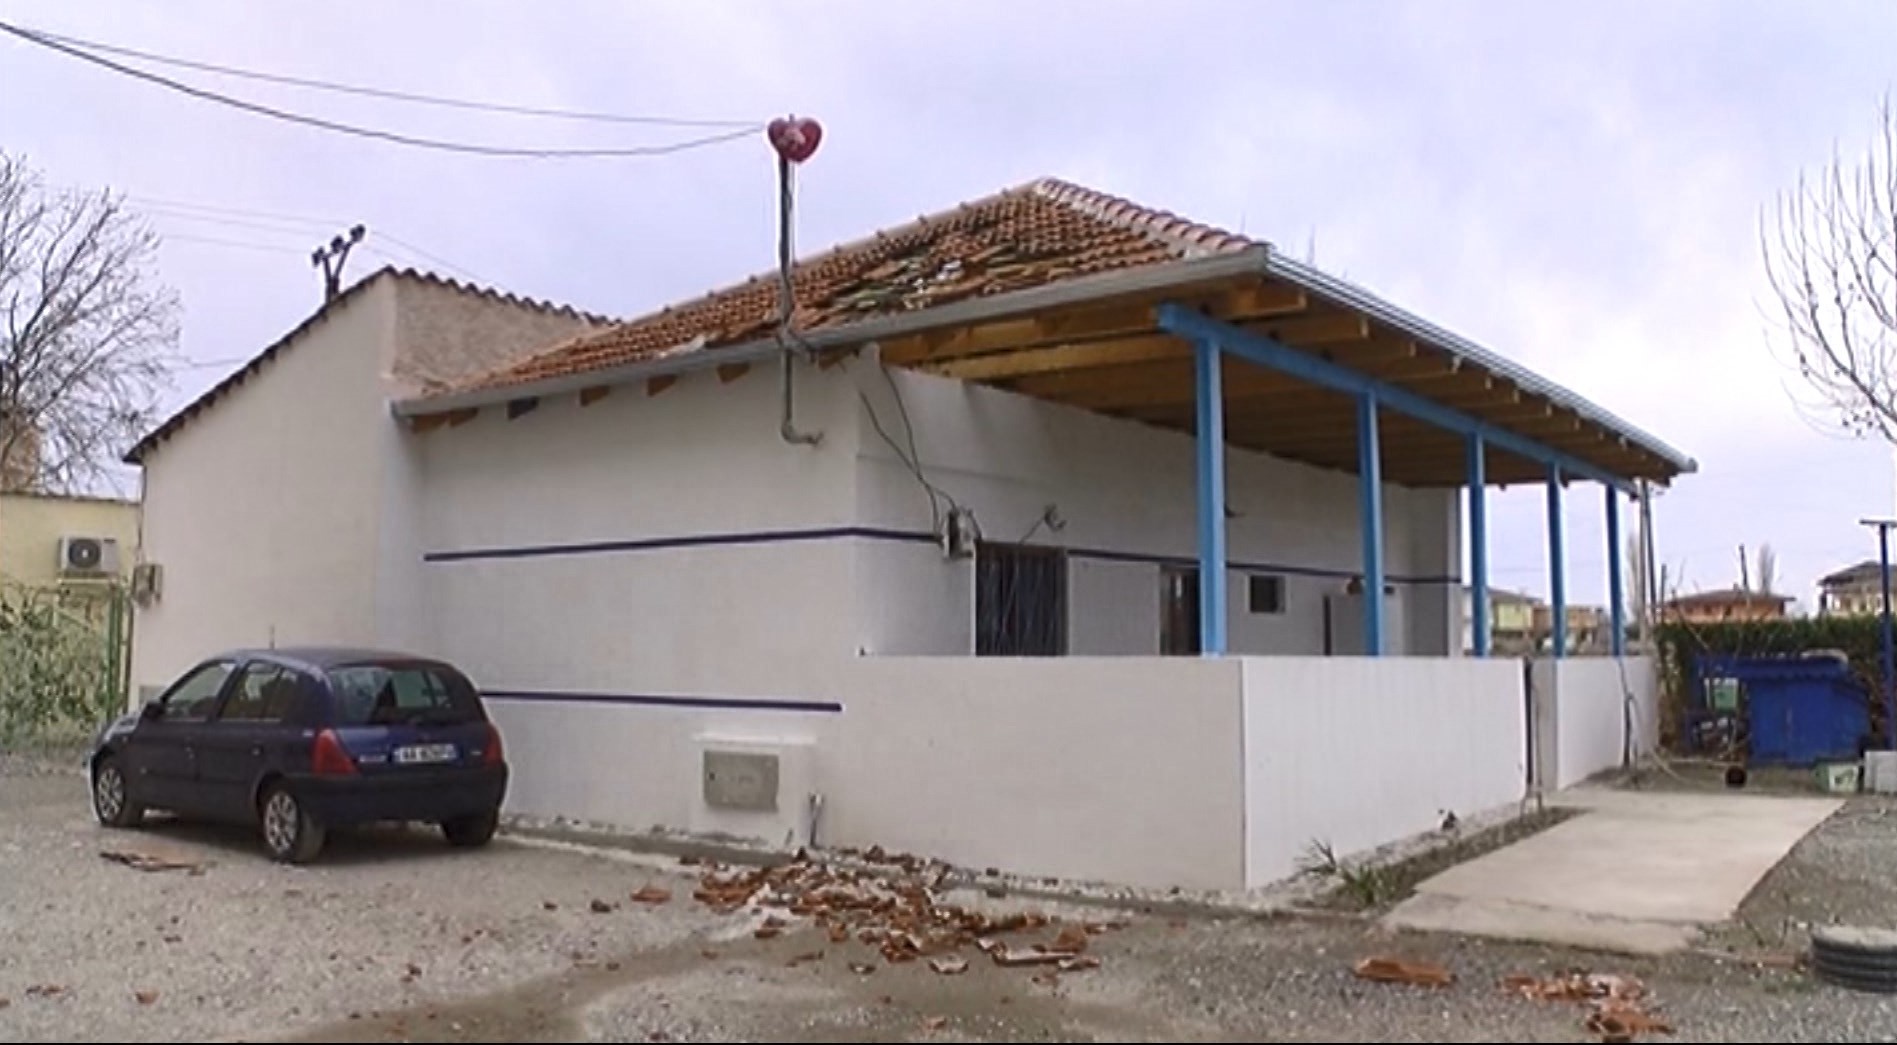 Moti i keq në Lezhë, dëmtohet çatia e një shtëpie